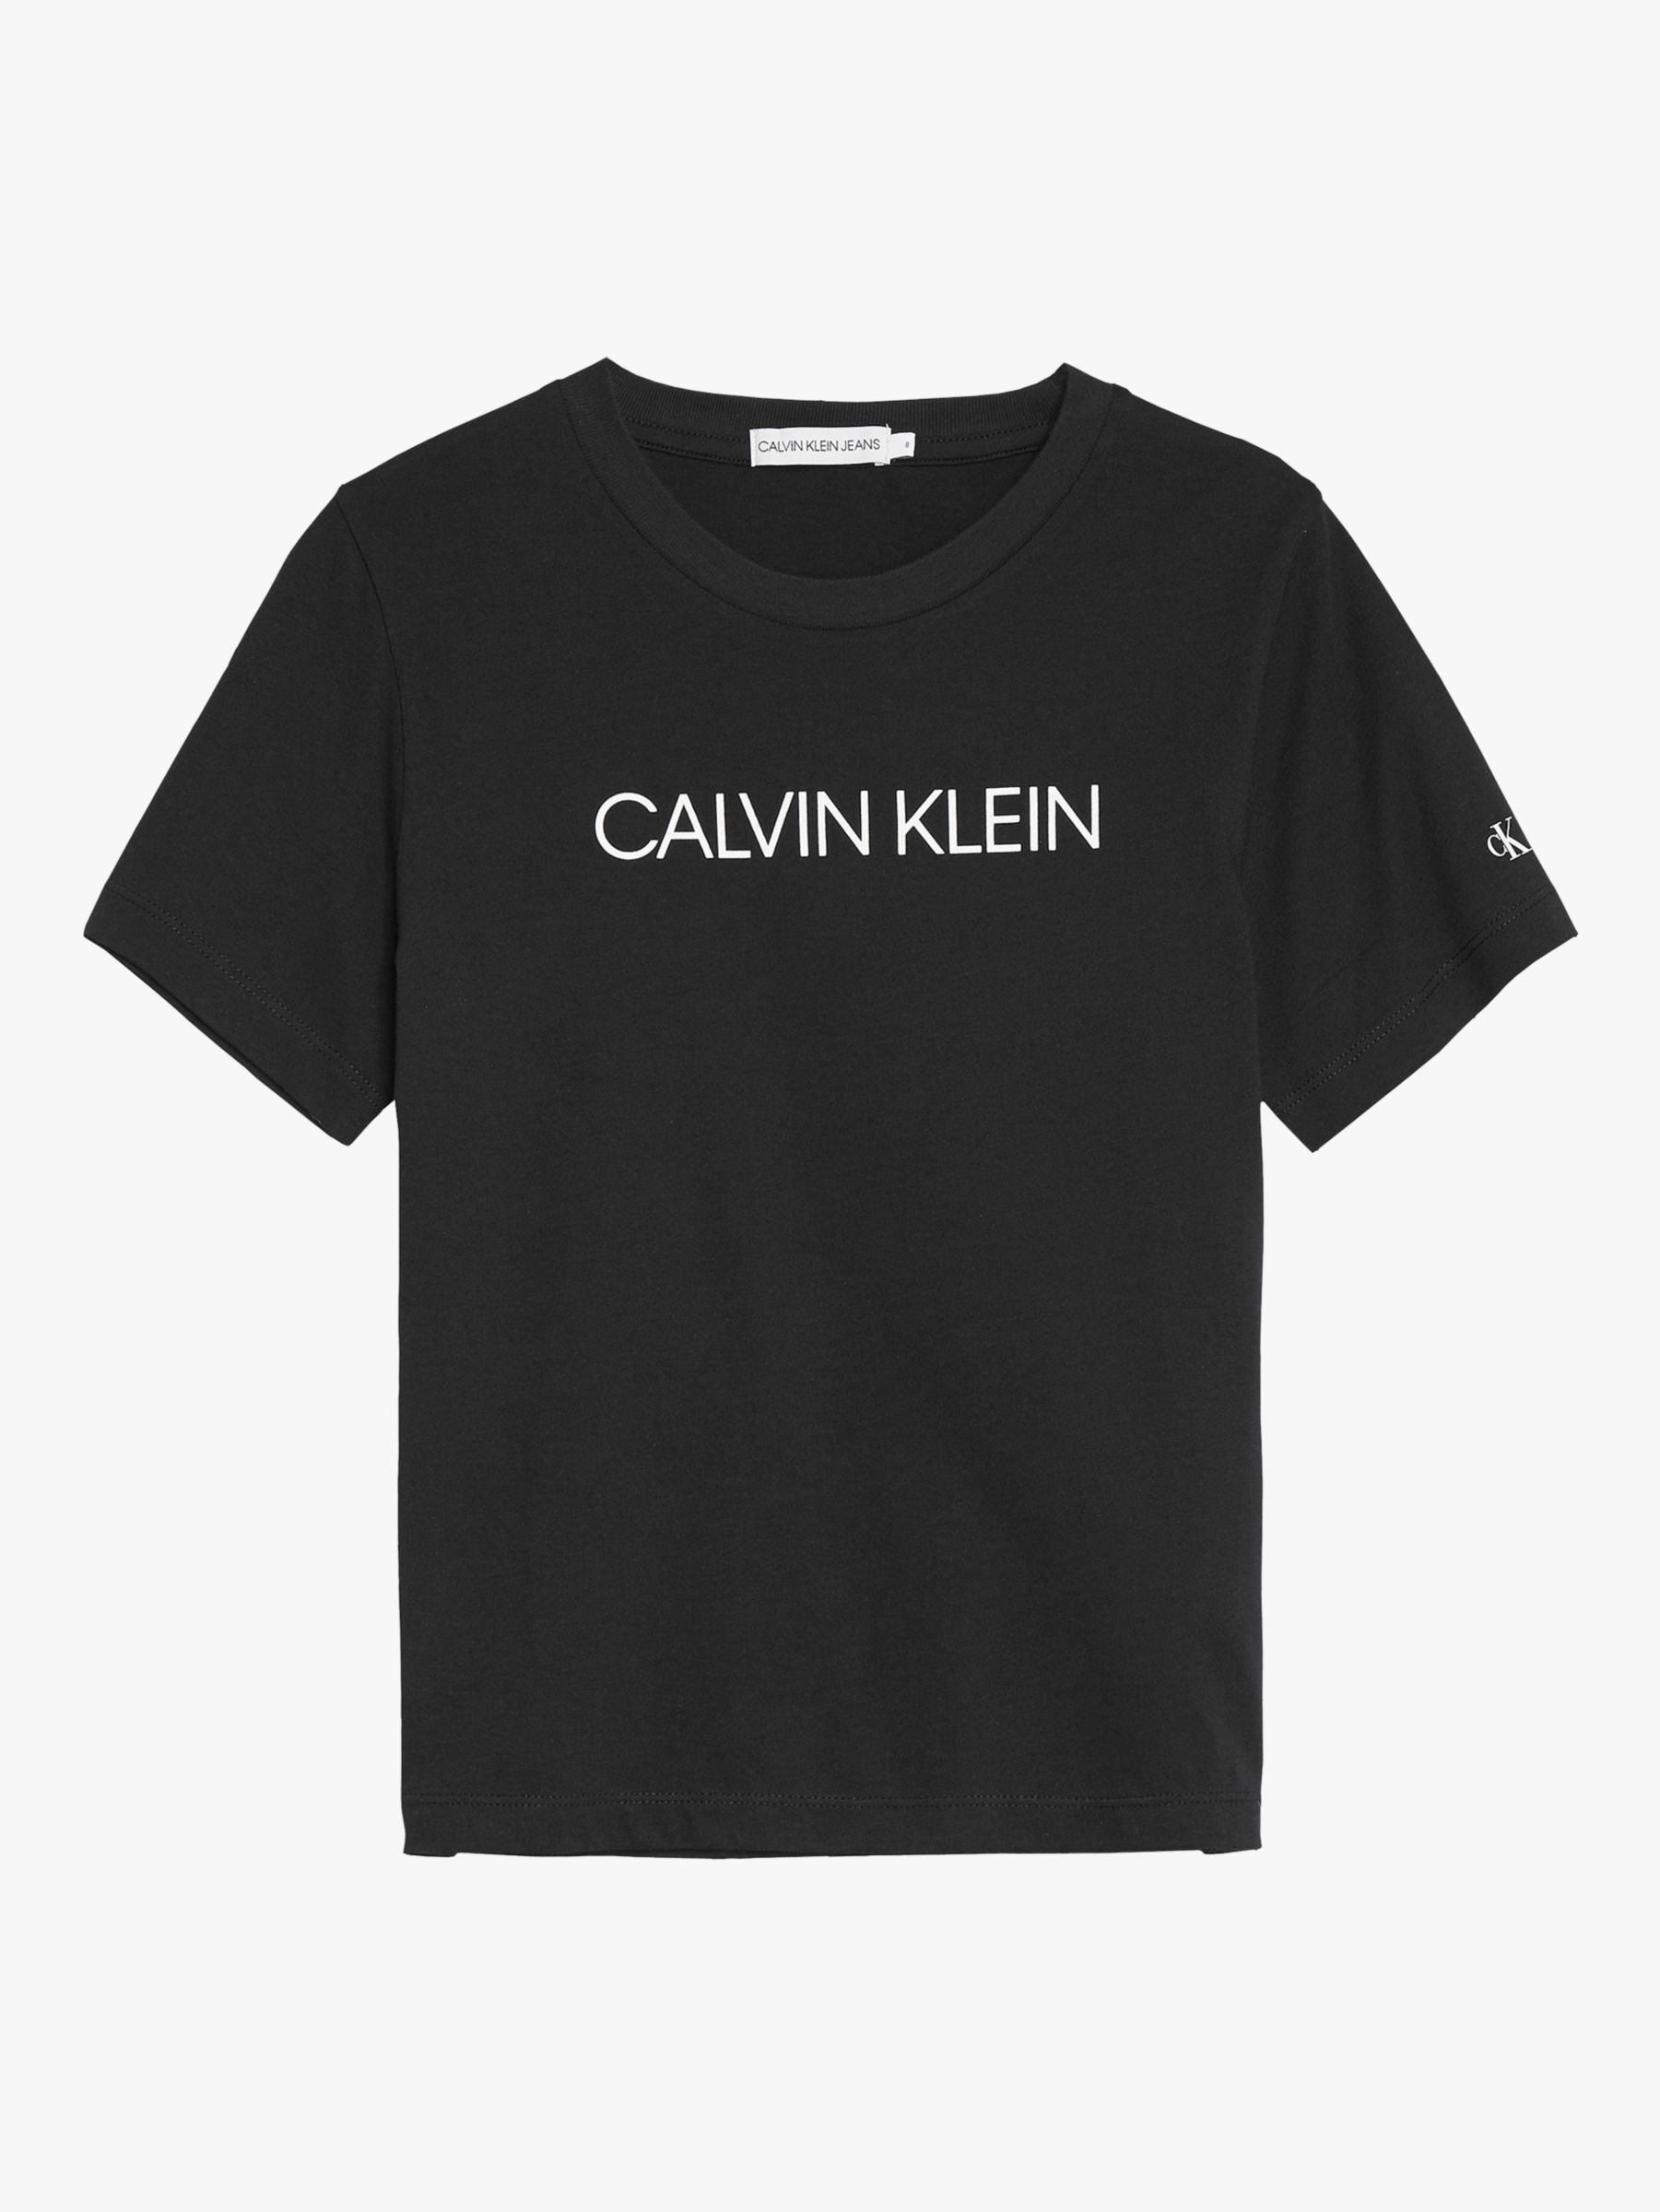 Calvin Klein logo  Calvin klein perfume, Shirt print design, Calvin klein  wallpaper